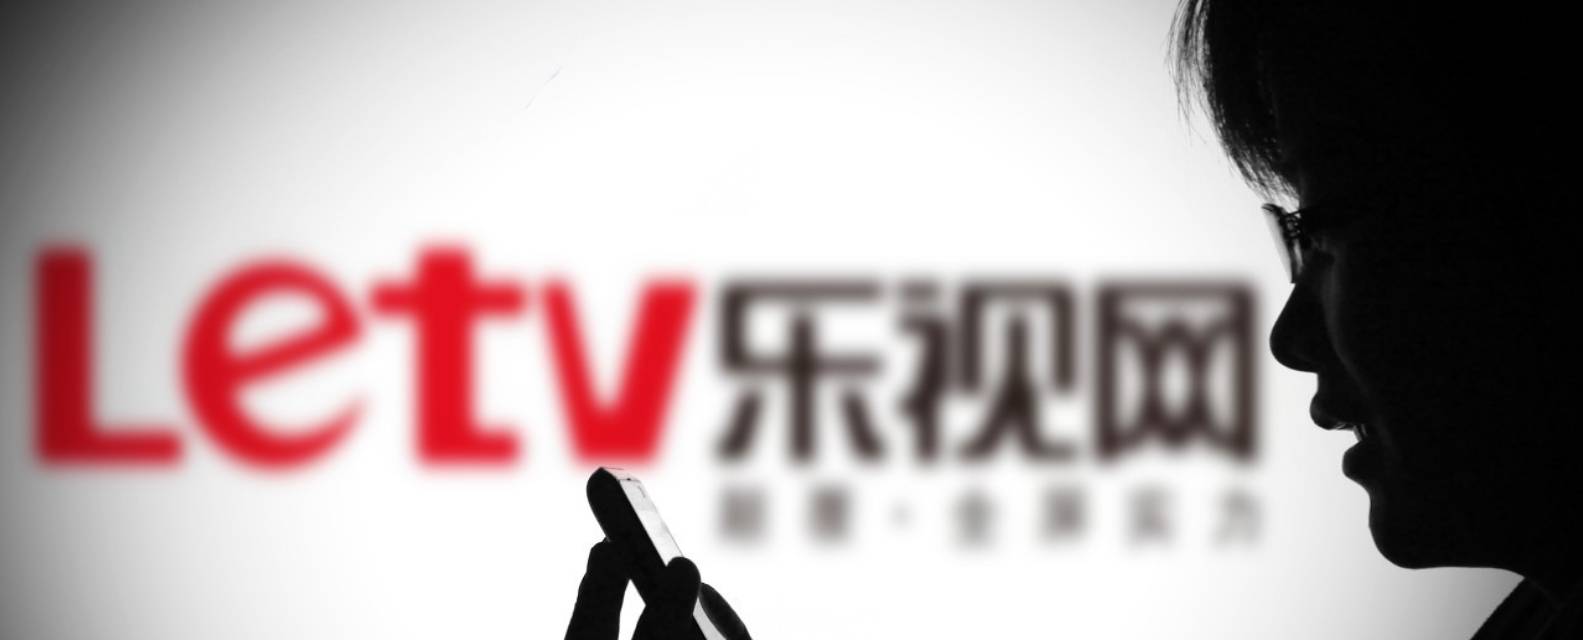 leshi23 - In che modo LeTV, che deve più di 20 miliardi di yuan, è diventata una “società fatata” con un sistema di lavoro di 4,5 giorni?